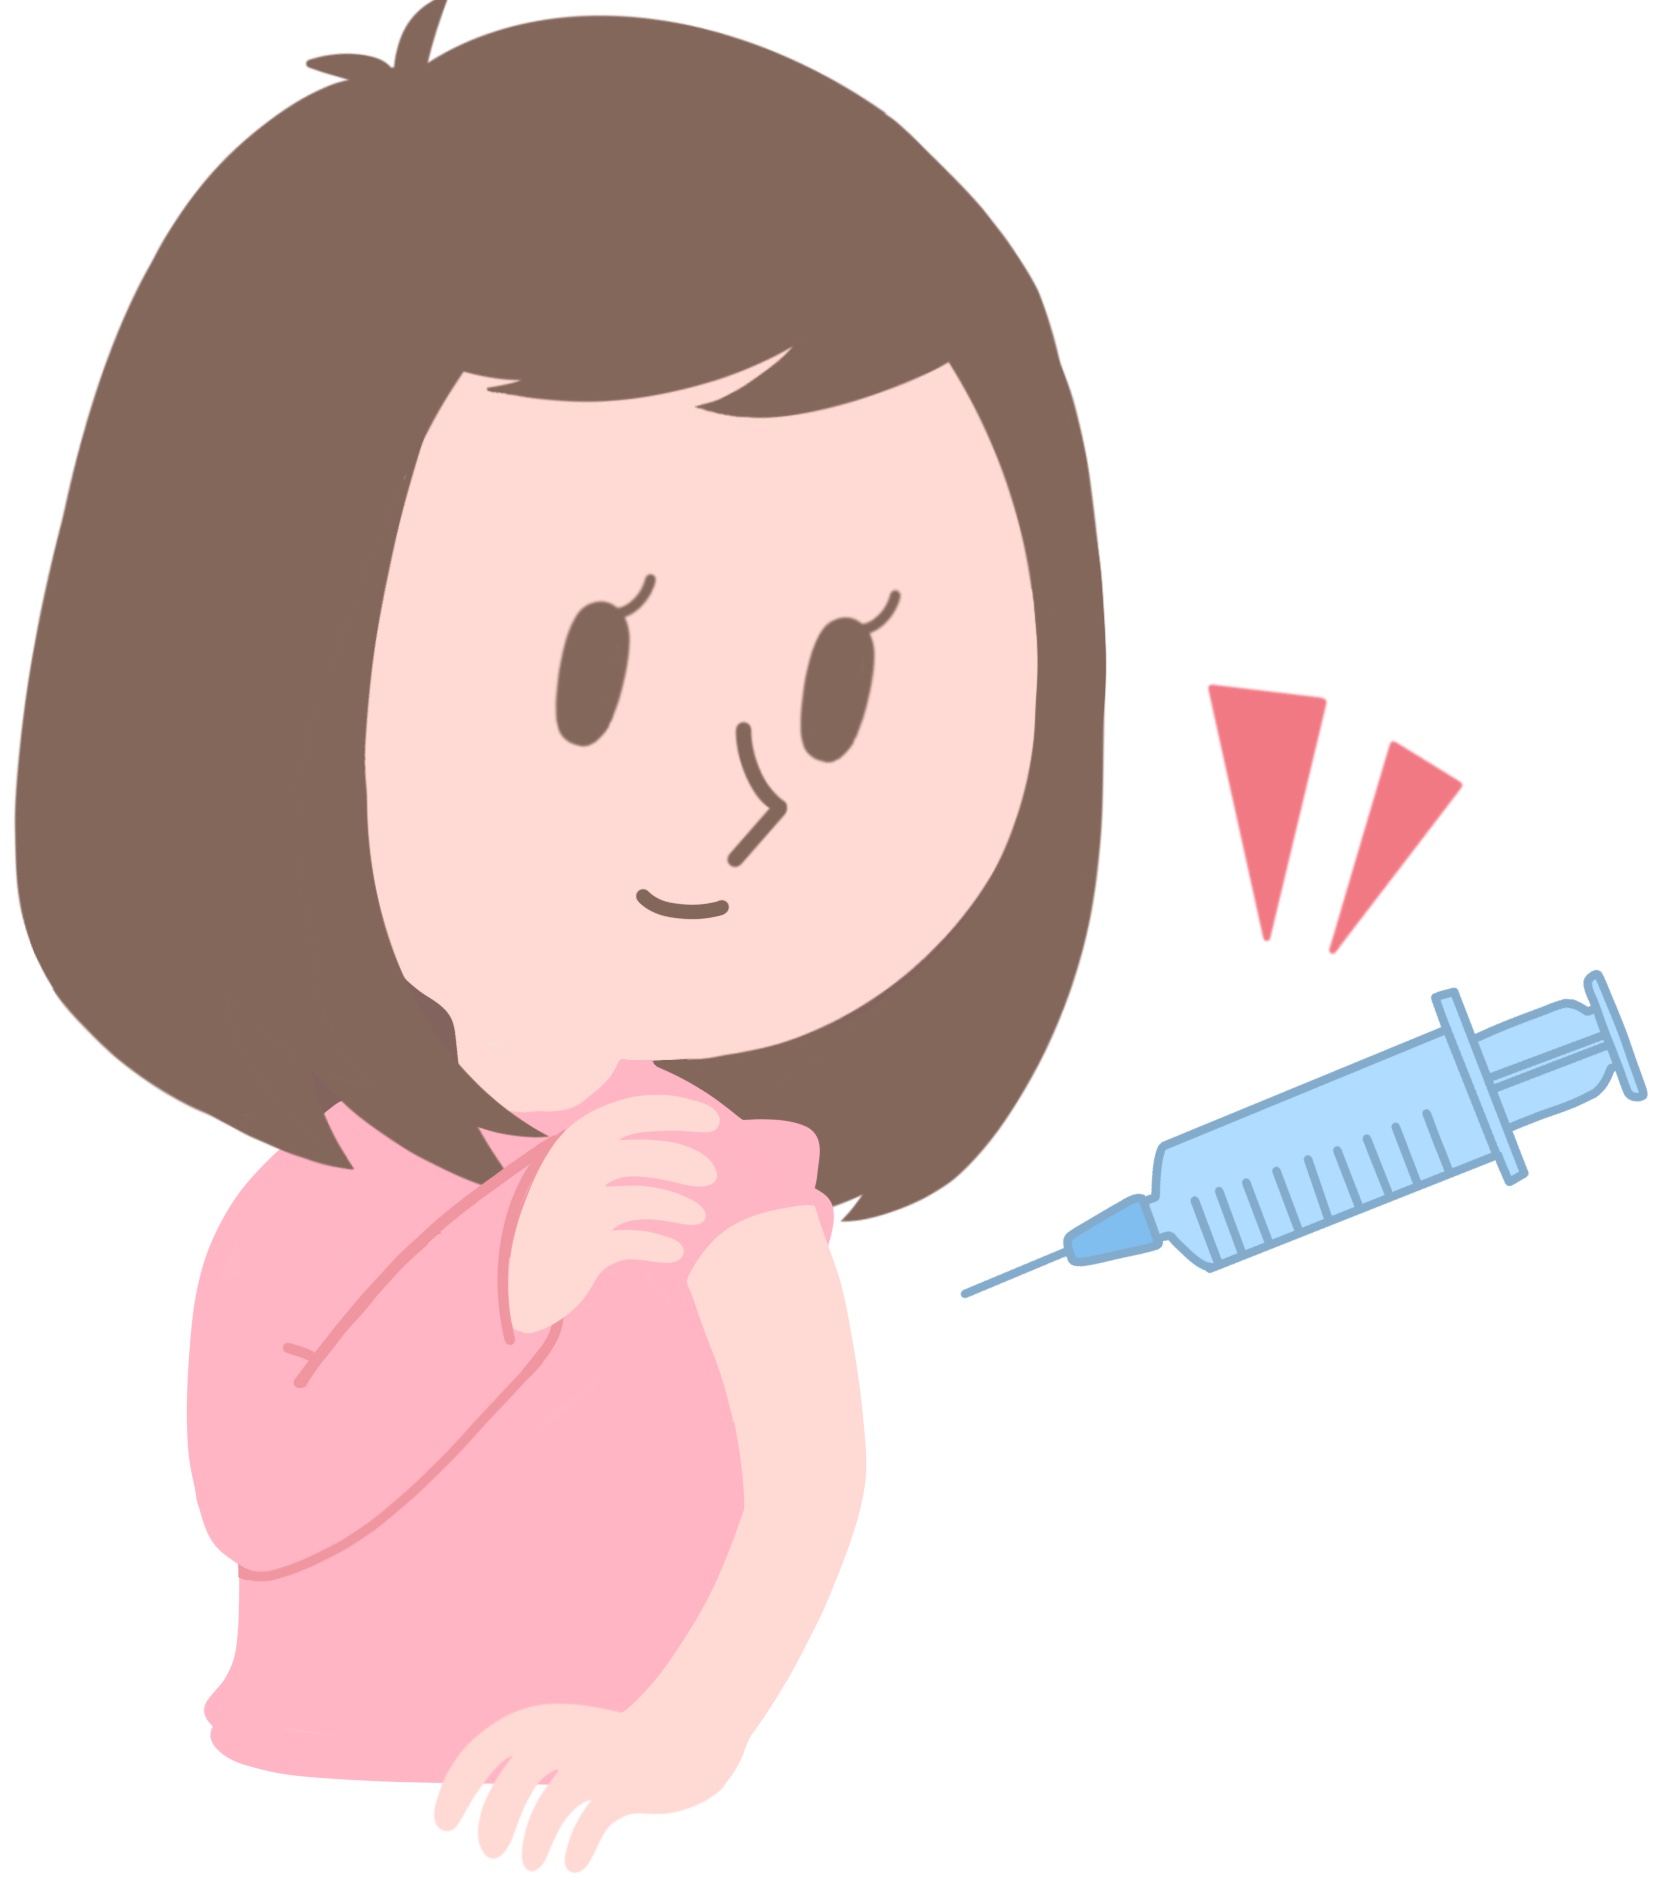 HPVワクチン接種について